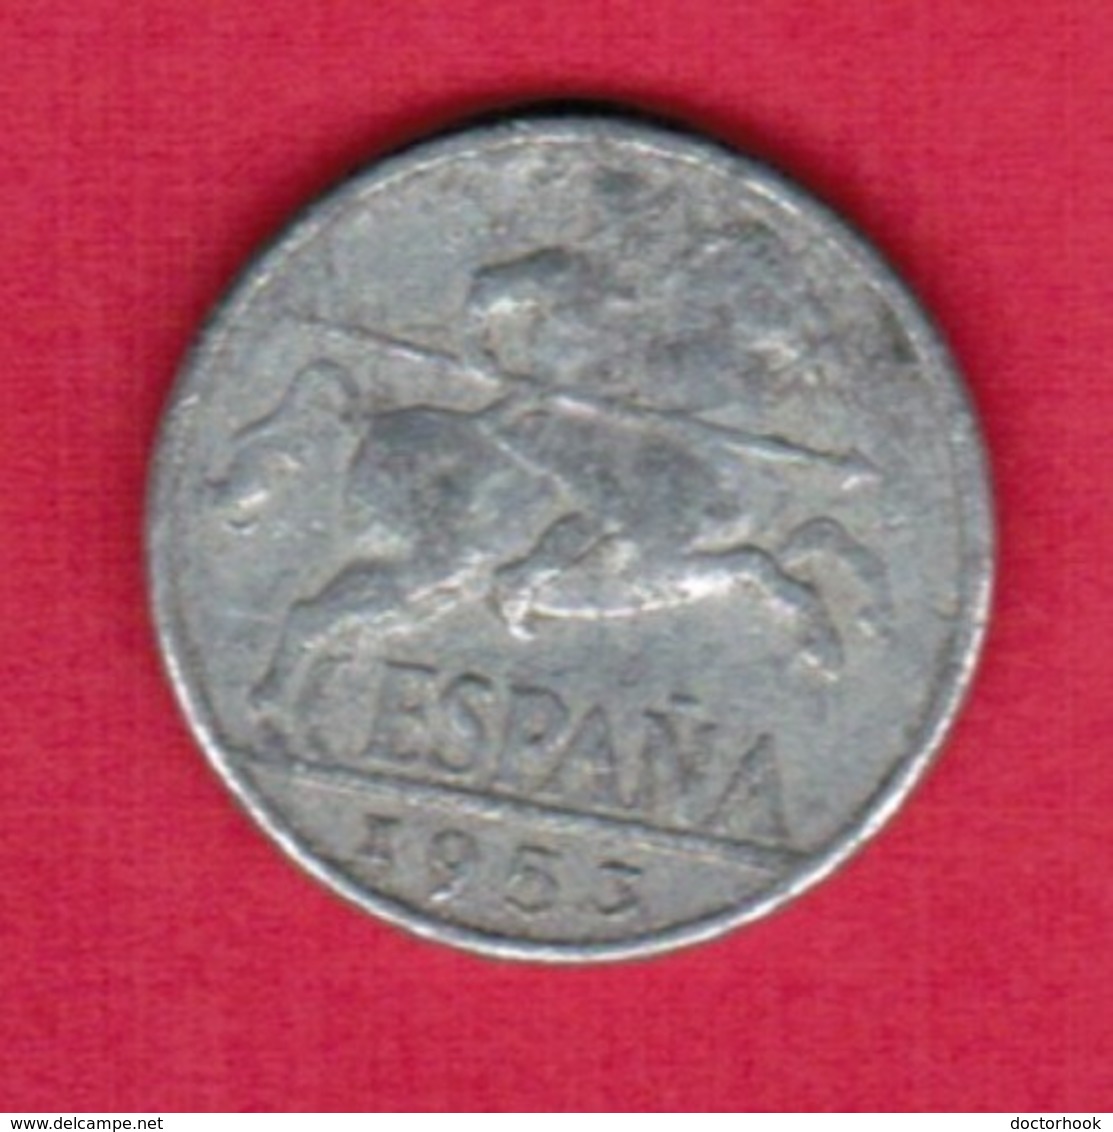 SPAIN   10 CENTIMOS 1953 (KM # 766) #5373 - 10 Centimos